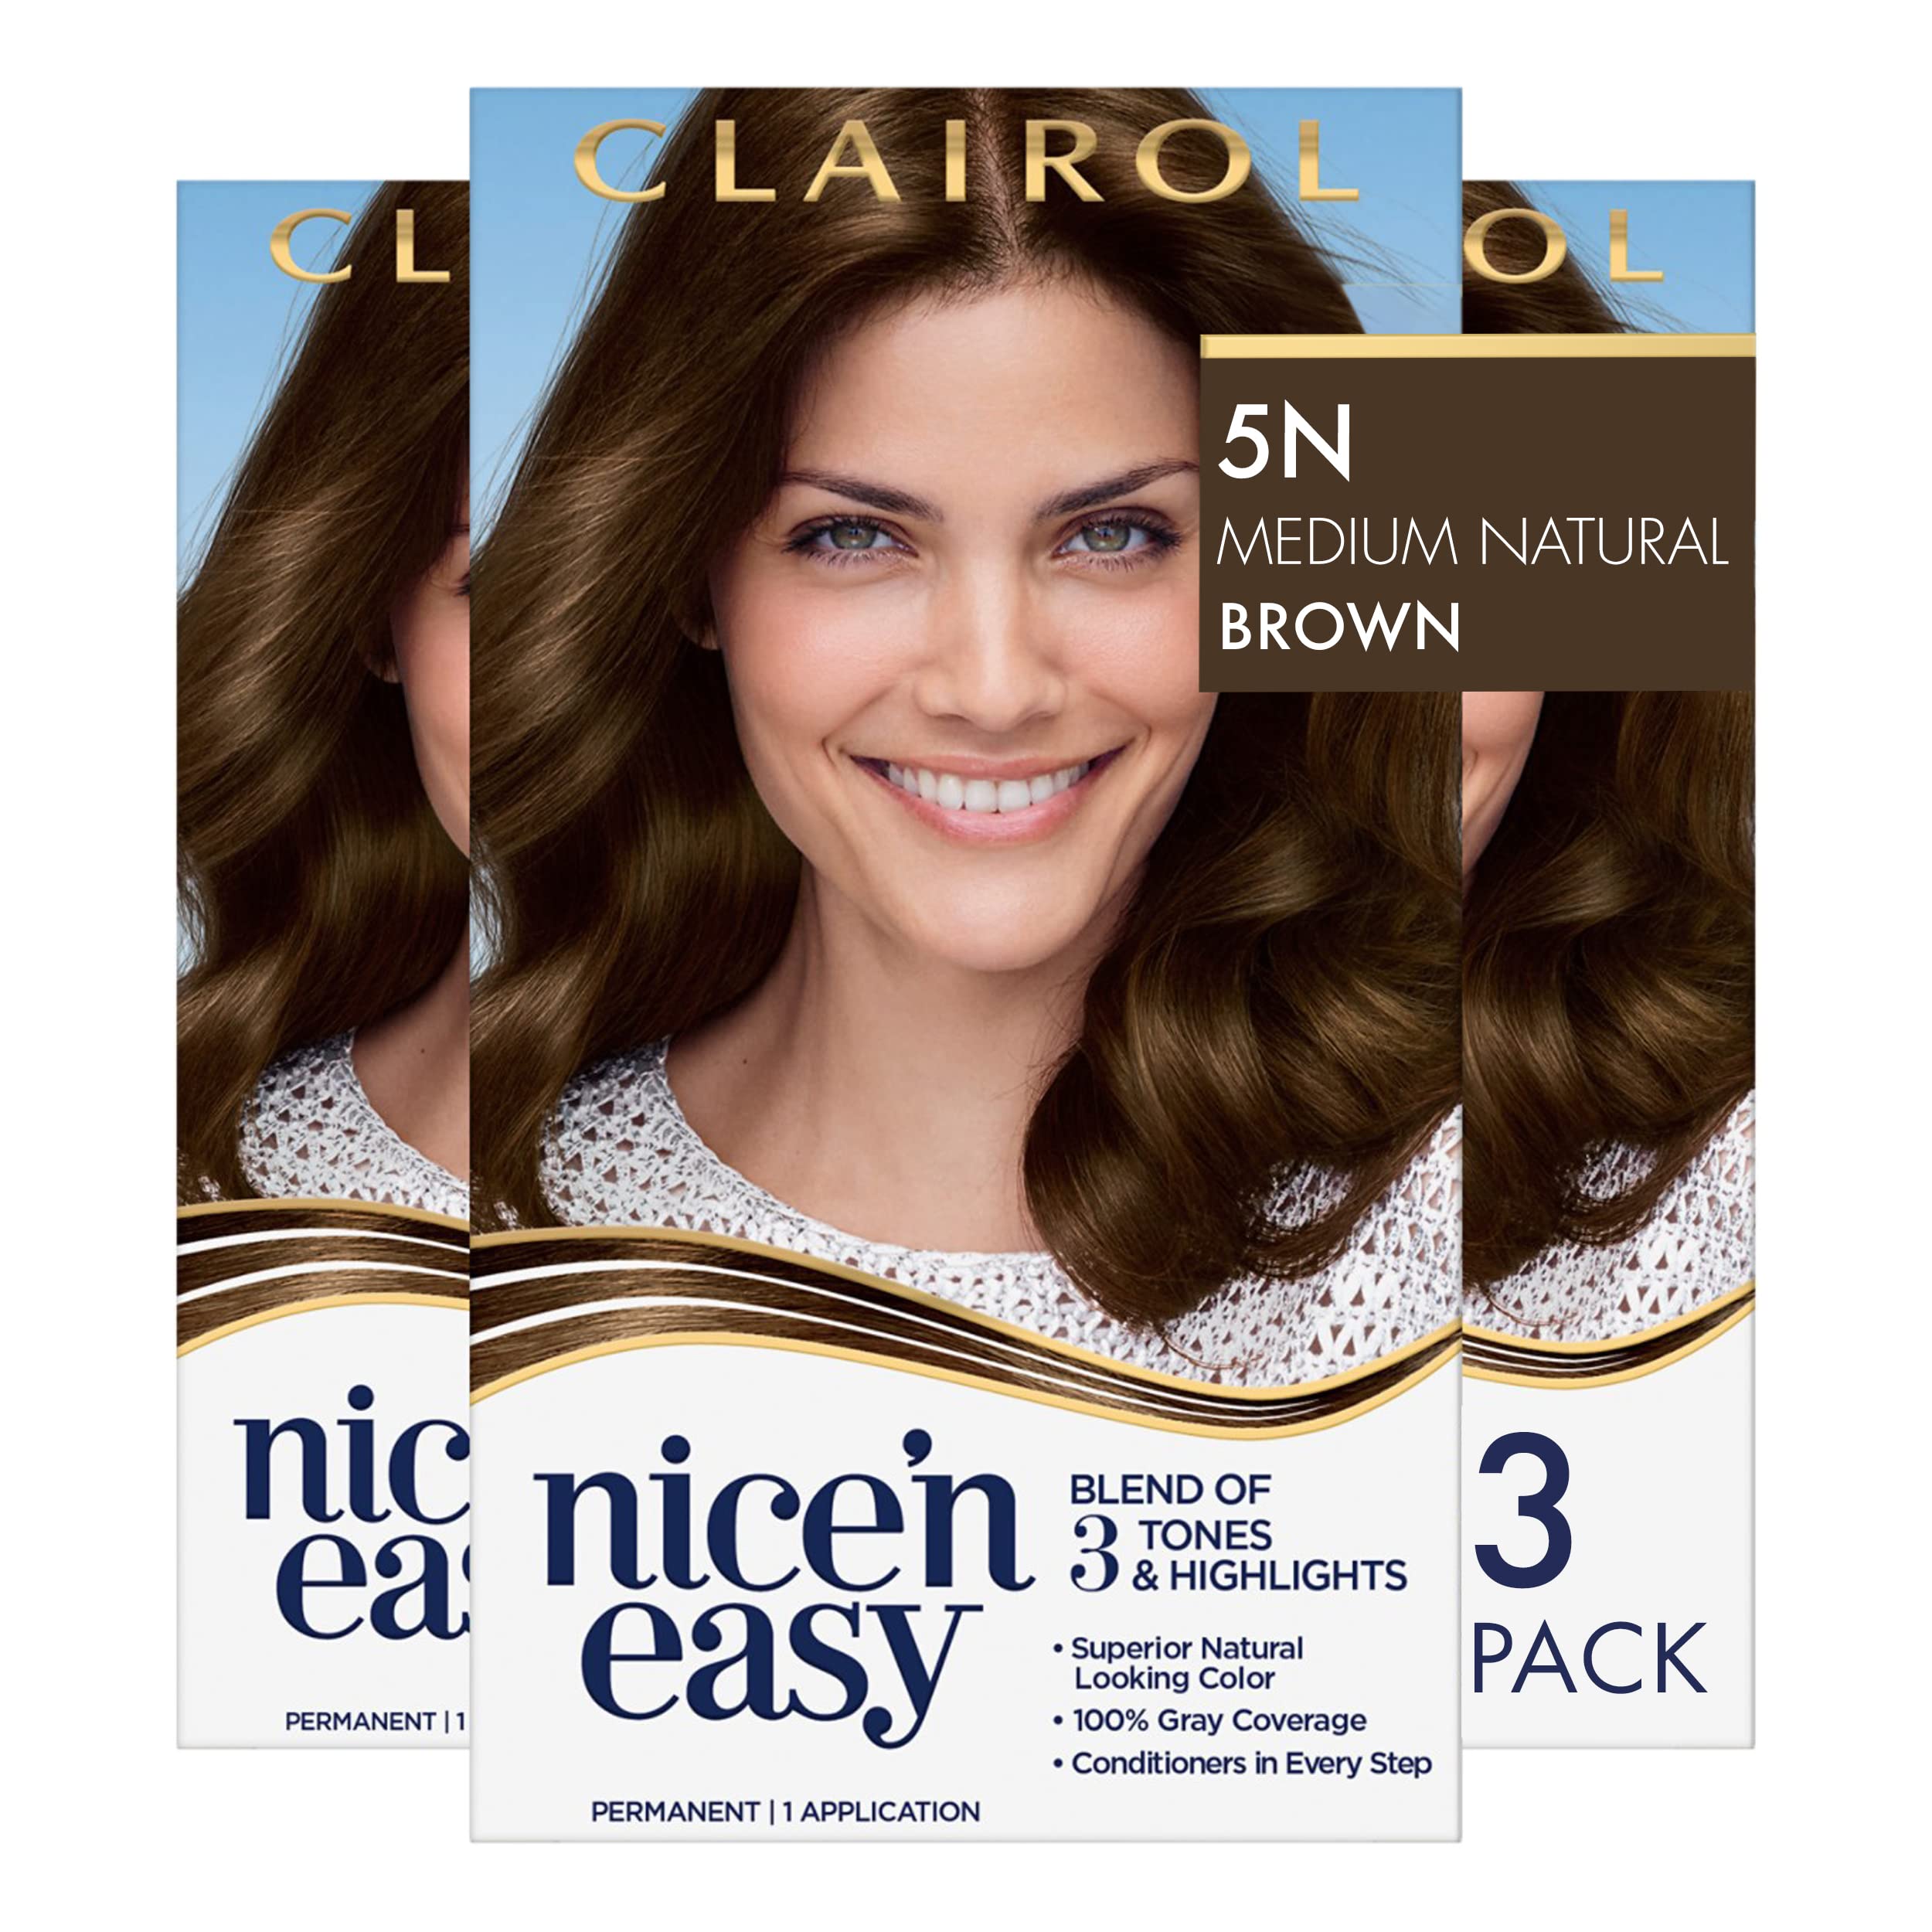 Mua Clairol Nice'n Easy Liquid Permanent Hair Dye, 5N Medium Natural Brown  Hair Color, Pack of 3 trên Amazon Mỹ chính hãng 2023 | Giaonhan247